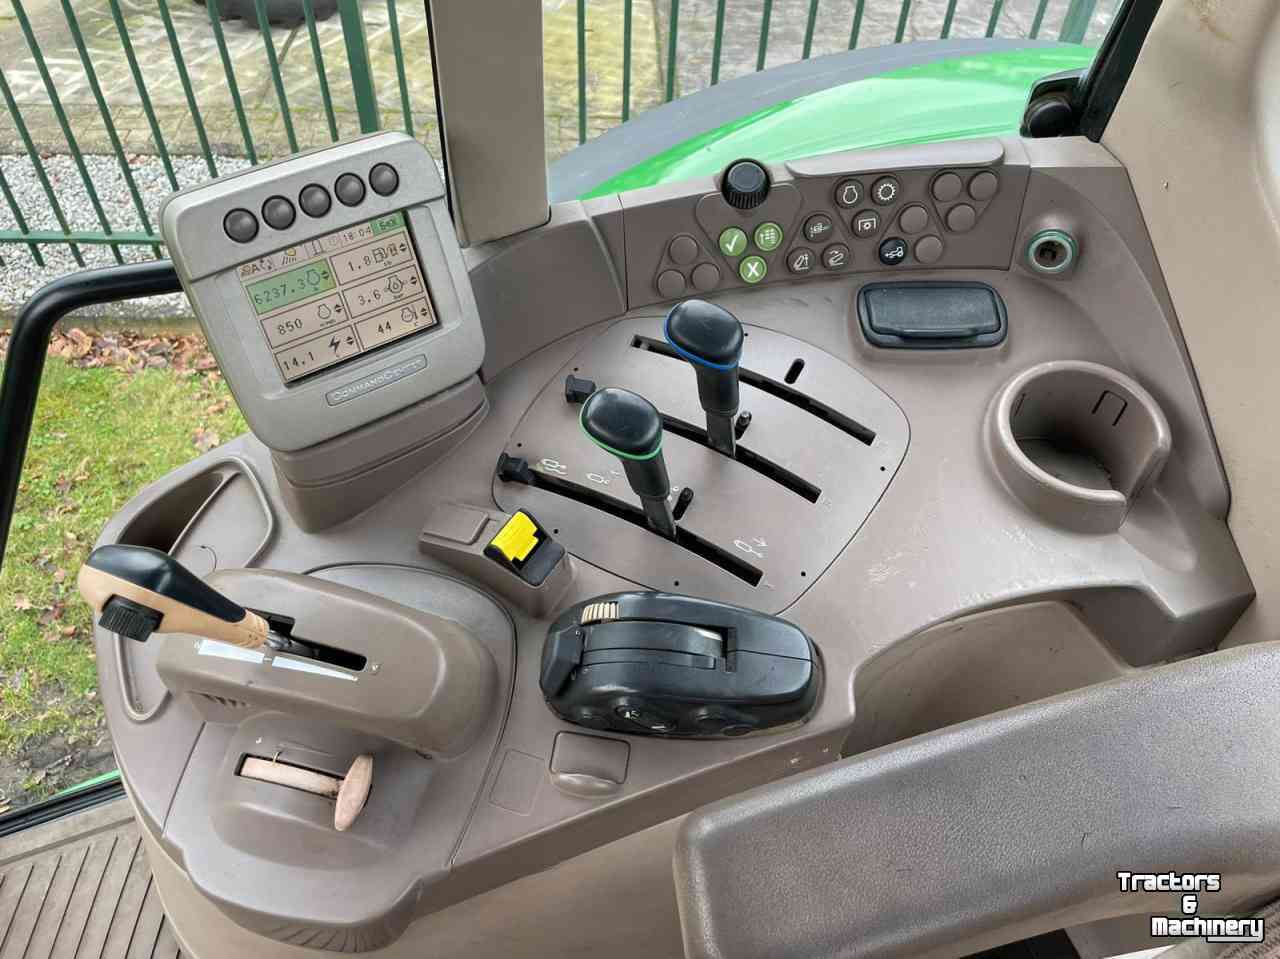 Tractors John Deere 7530 Premium